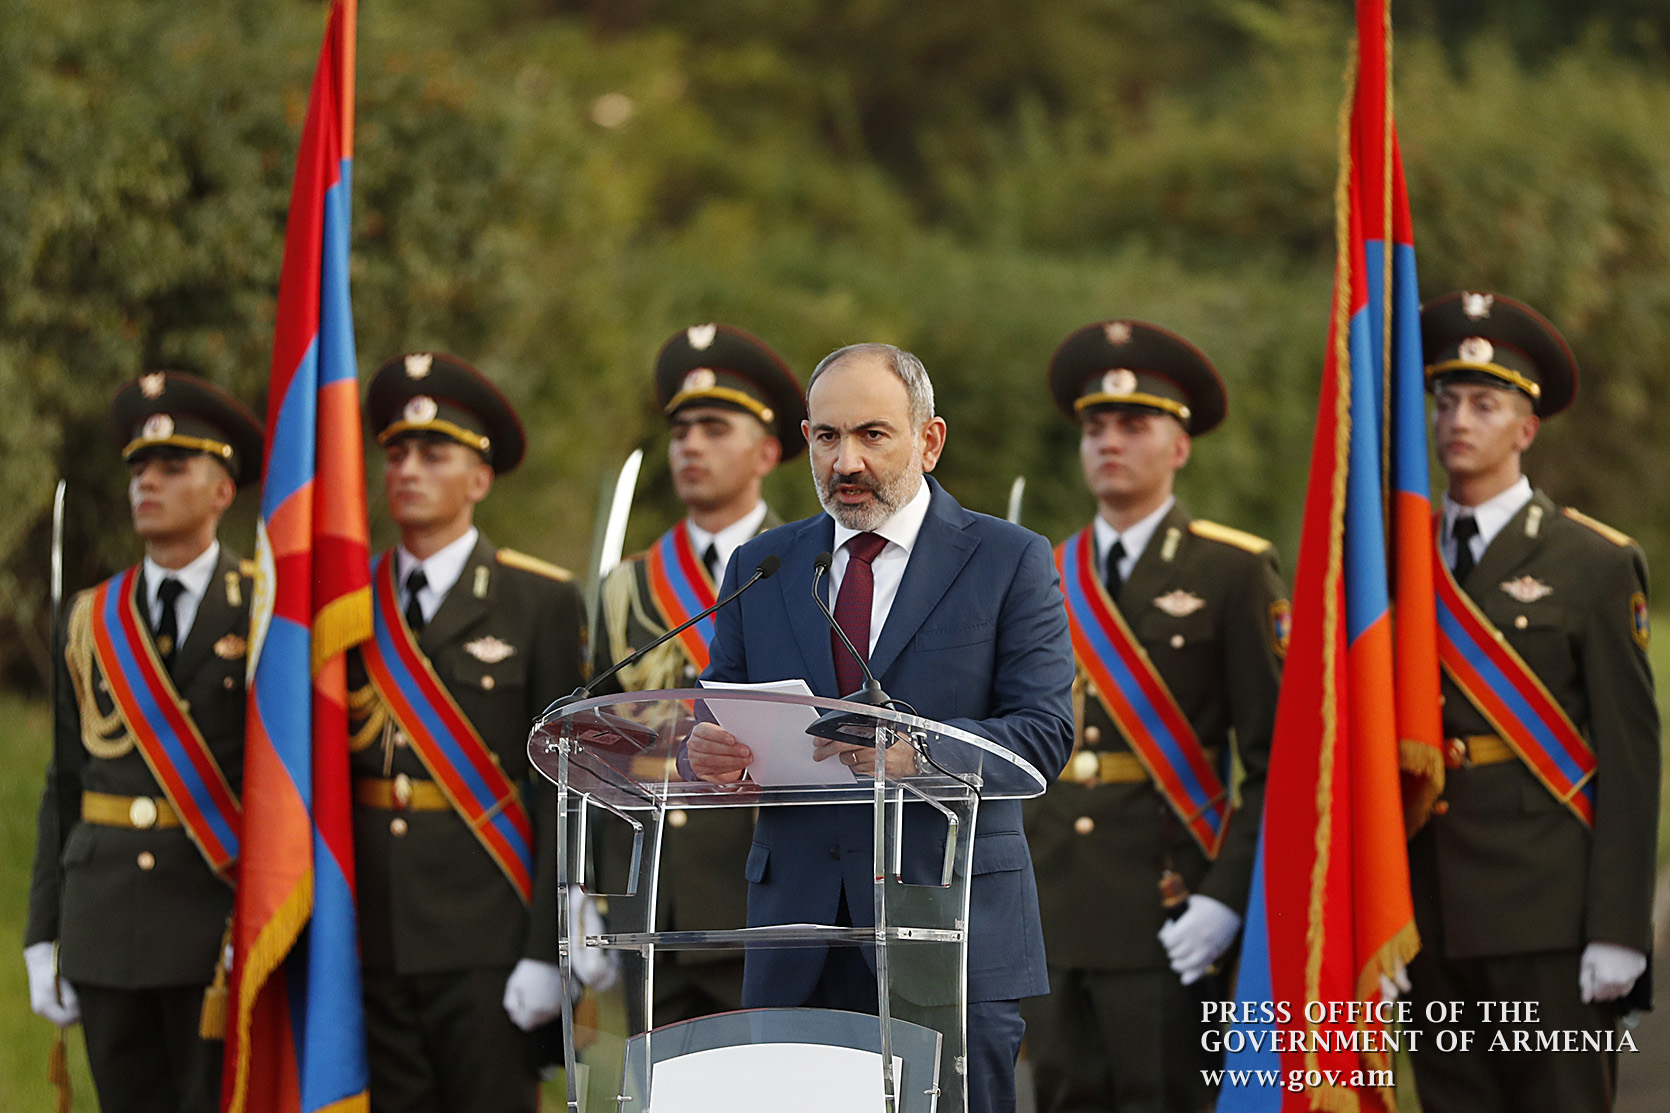 Առաջին անգամն է, երբ Հայաստանի ազգային հերոսն իր շքանշանը ստանալու է անձամբ. վարչապետ